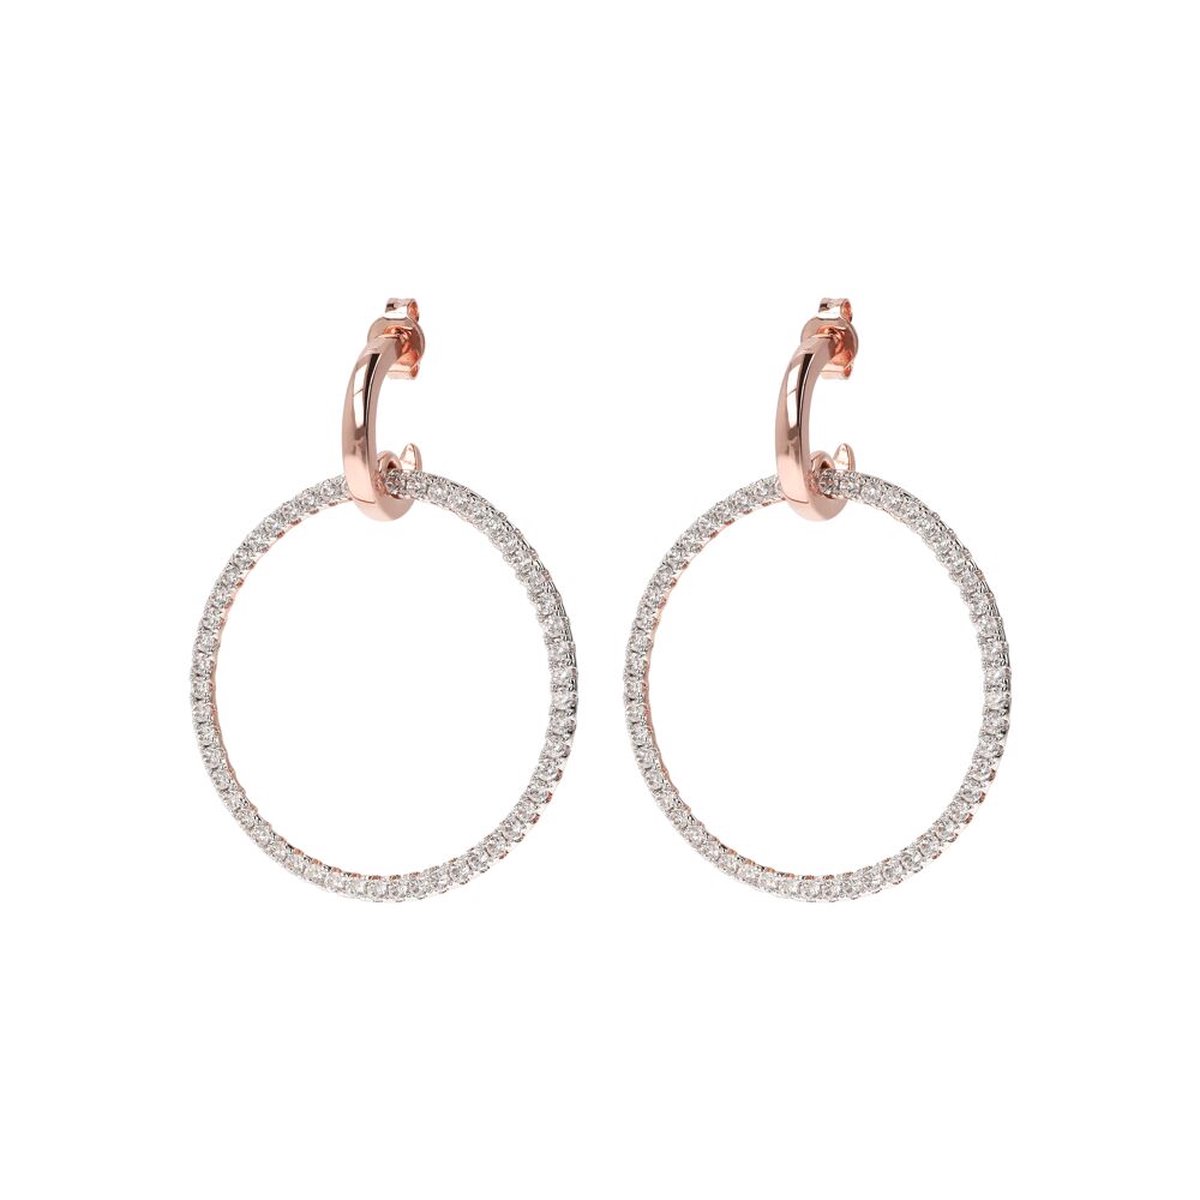 Dangle earrings with Open Heart Elements WSBZ01264.WR